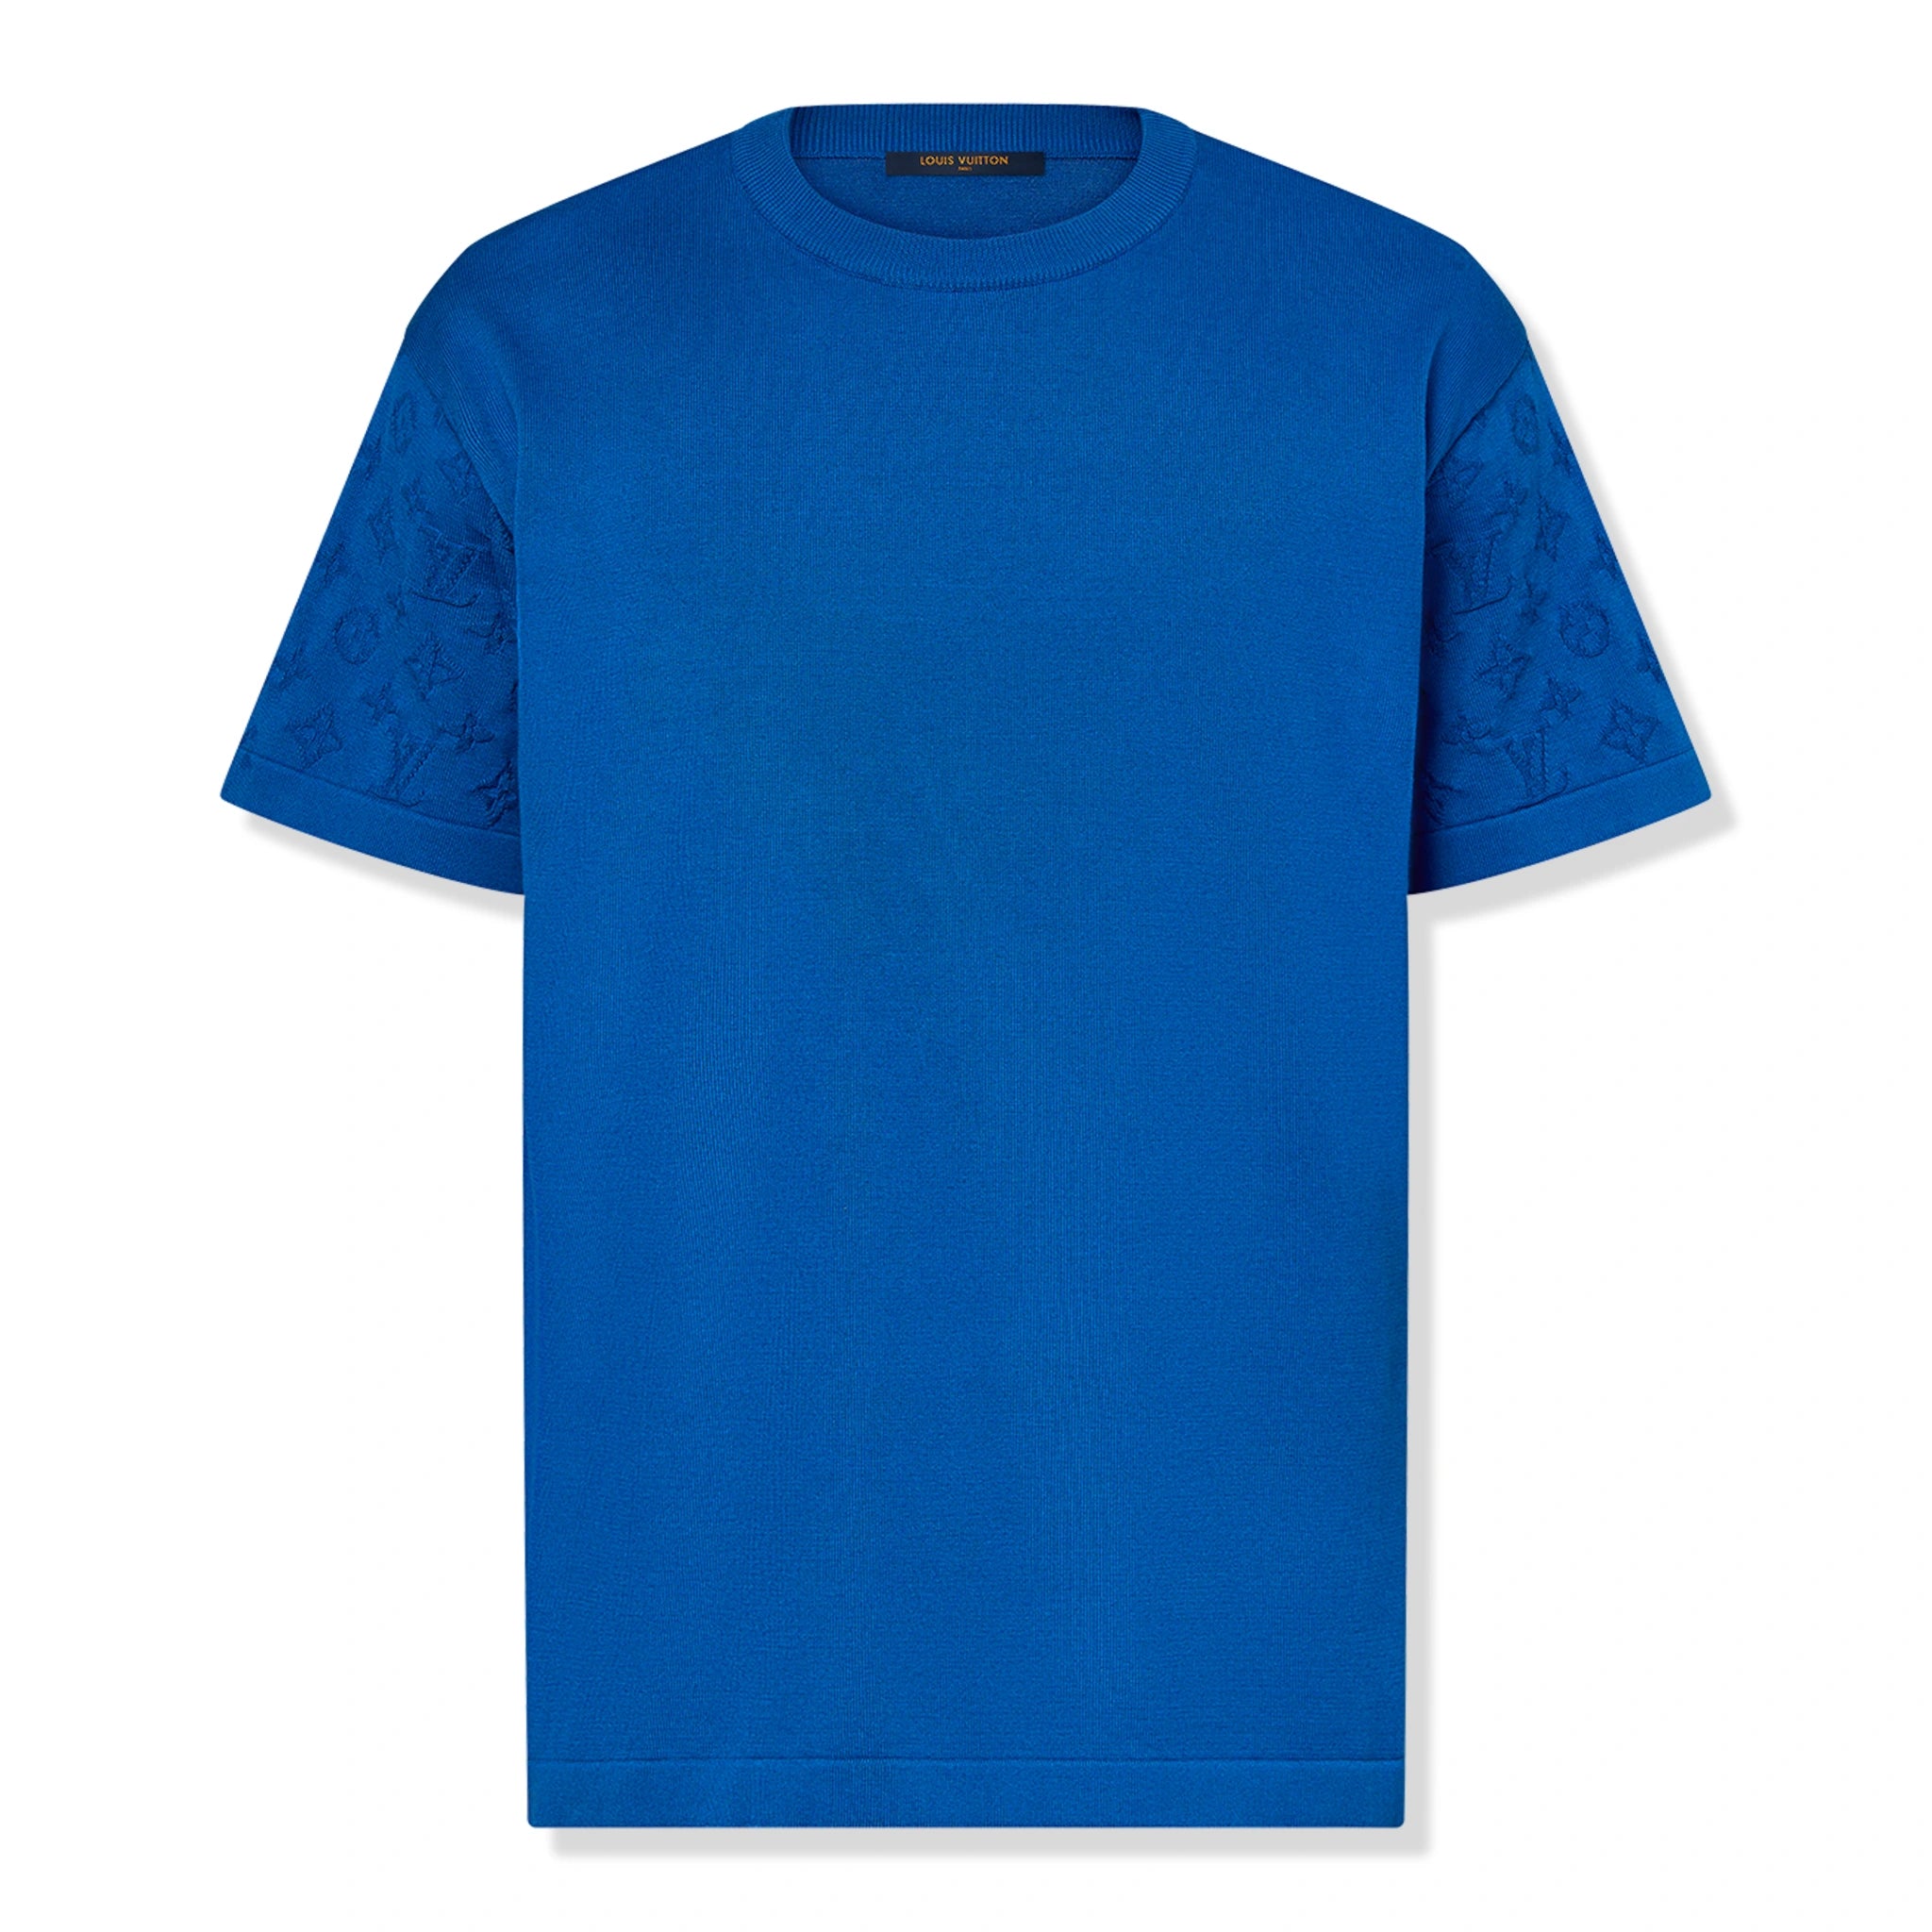 Front view of Louis Vuitton Monogram Signature Classic Blue T Shirt NVPROD5040005V